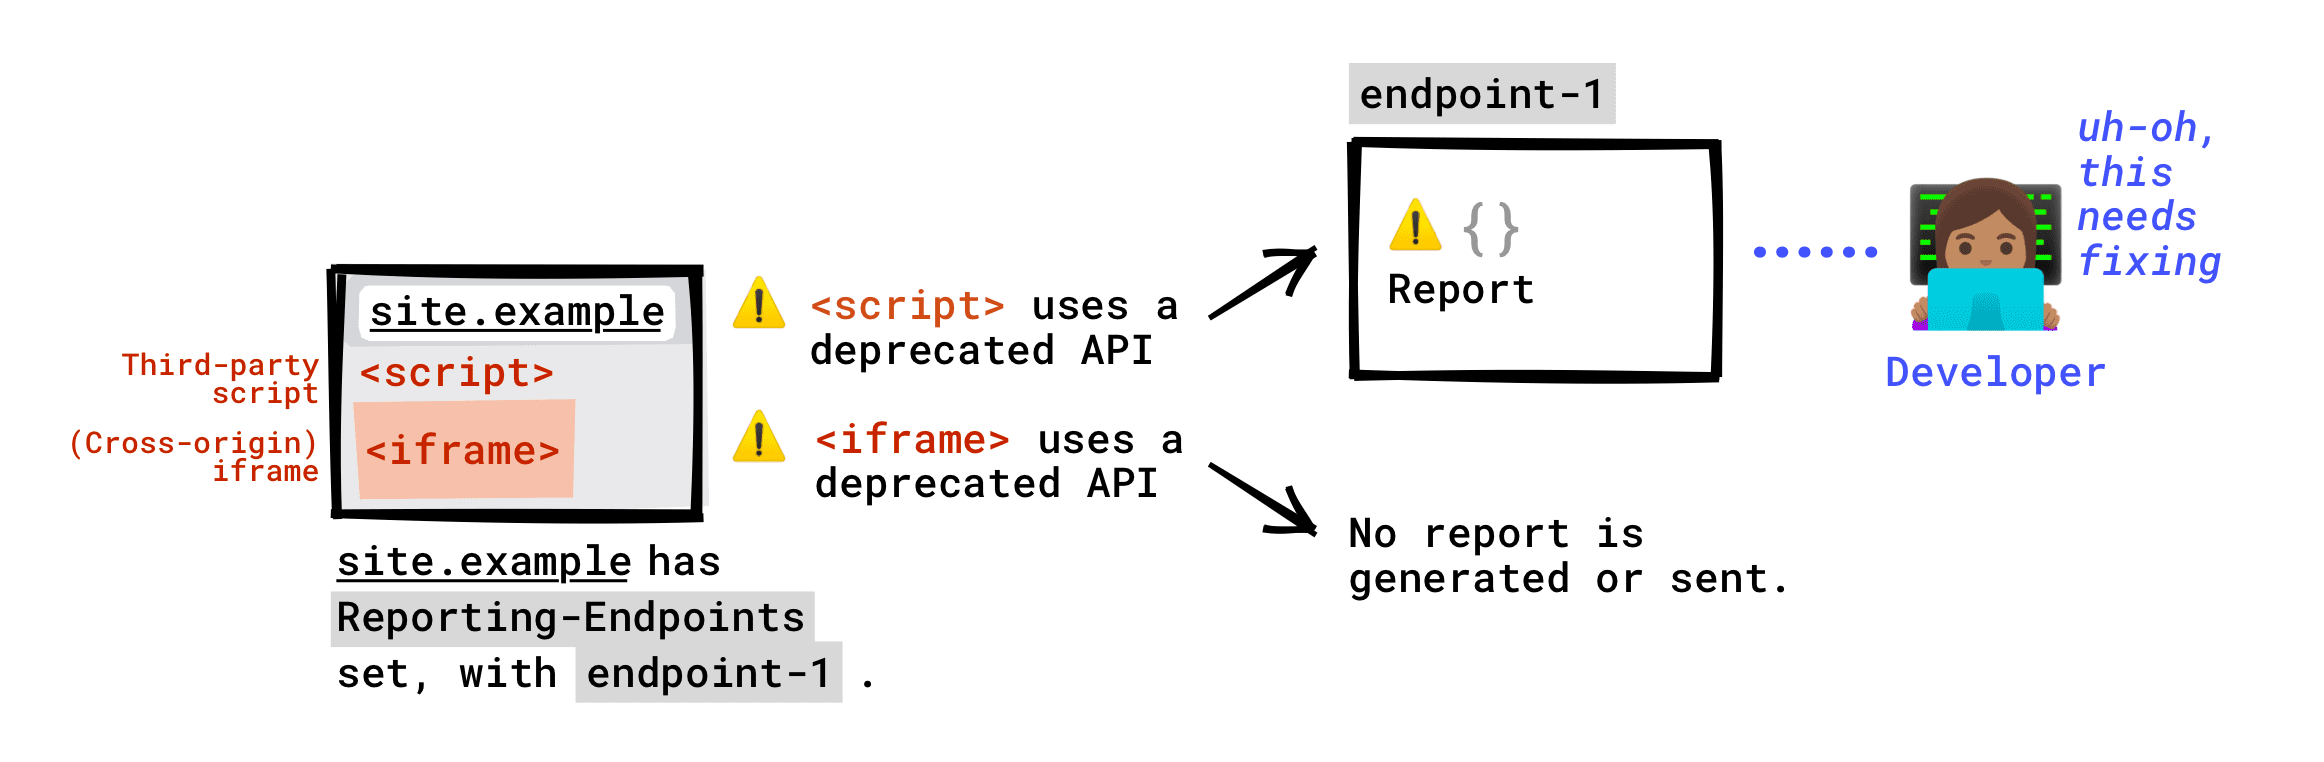 Se o cabeçalho Reporting-Endpoints estiver configurado na sua página: a API obsoleta chamada por scripts de terceiros em execução na sua página será informada para o endpoint. Uma API suspensa chamada por um iframe incorporado à página não será informada ao endpoint. Um relatório de descontinuação só será gerado se o servidor de iframe tiver configurado os endpoints de relatório. Esse relatório será enviado para qualquer endpoint que o servidor do iframe tiver configurado.